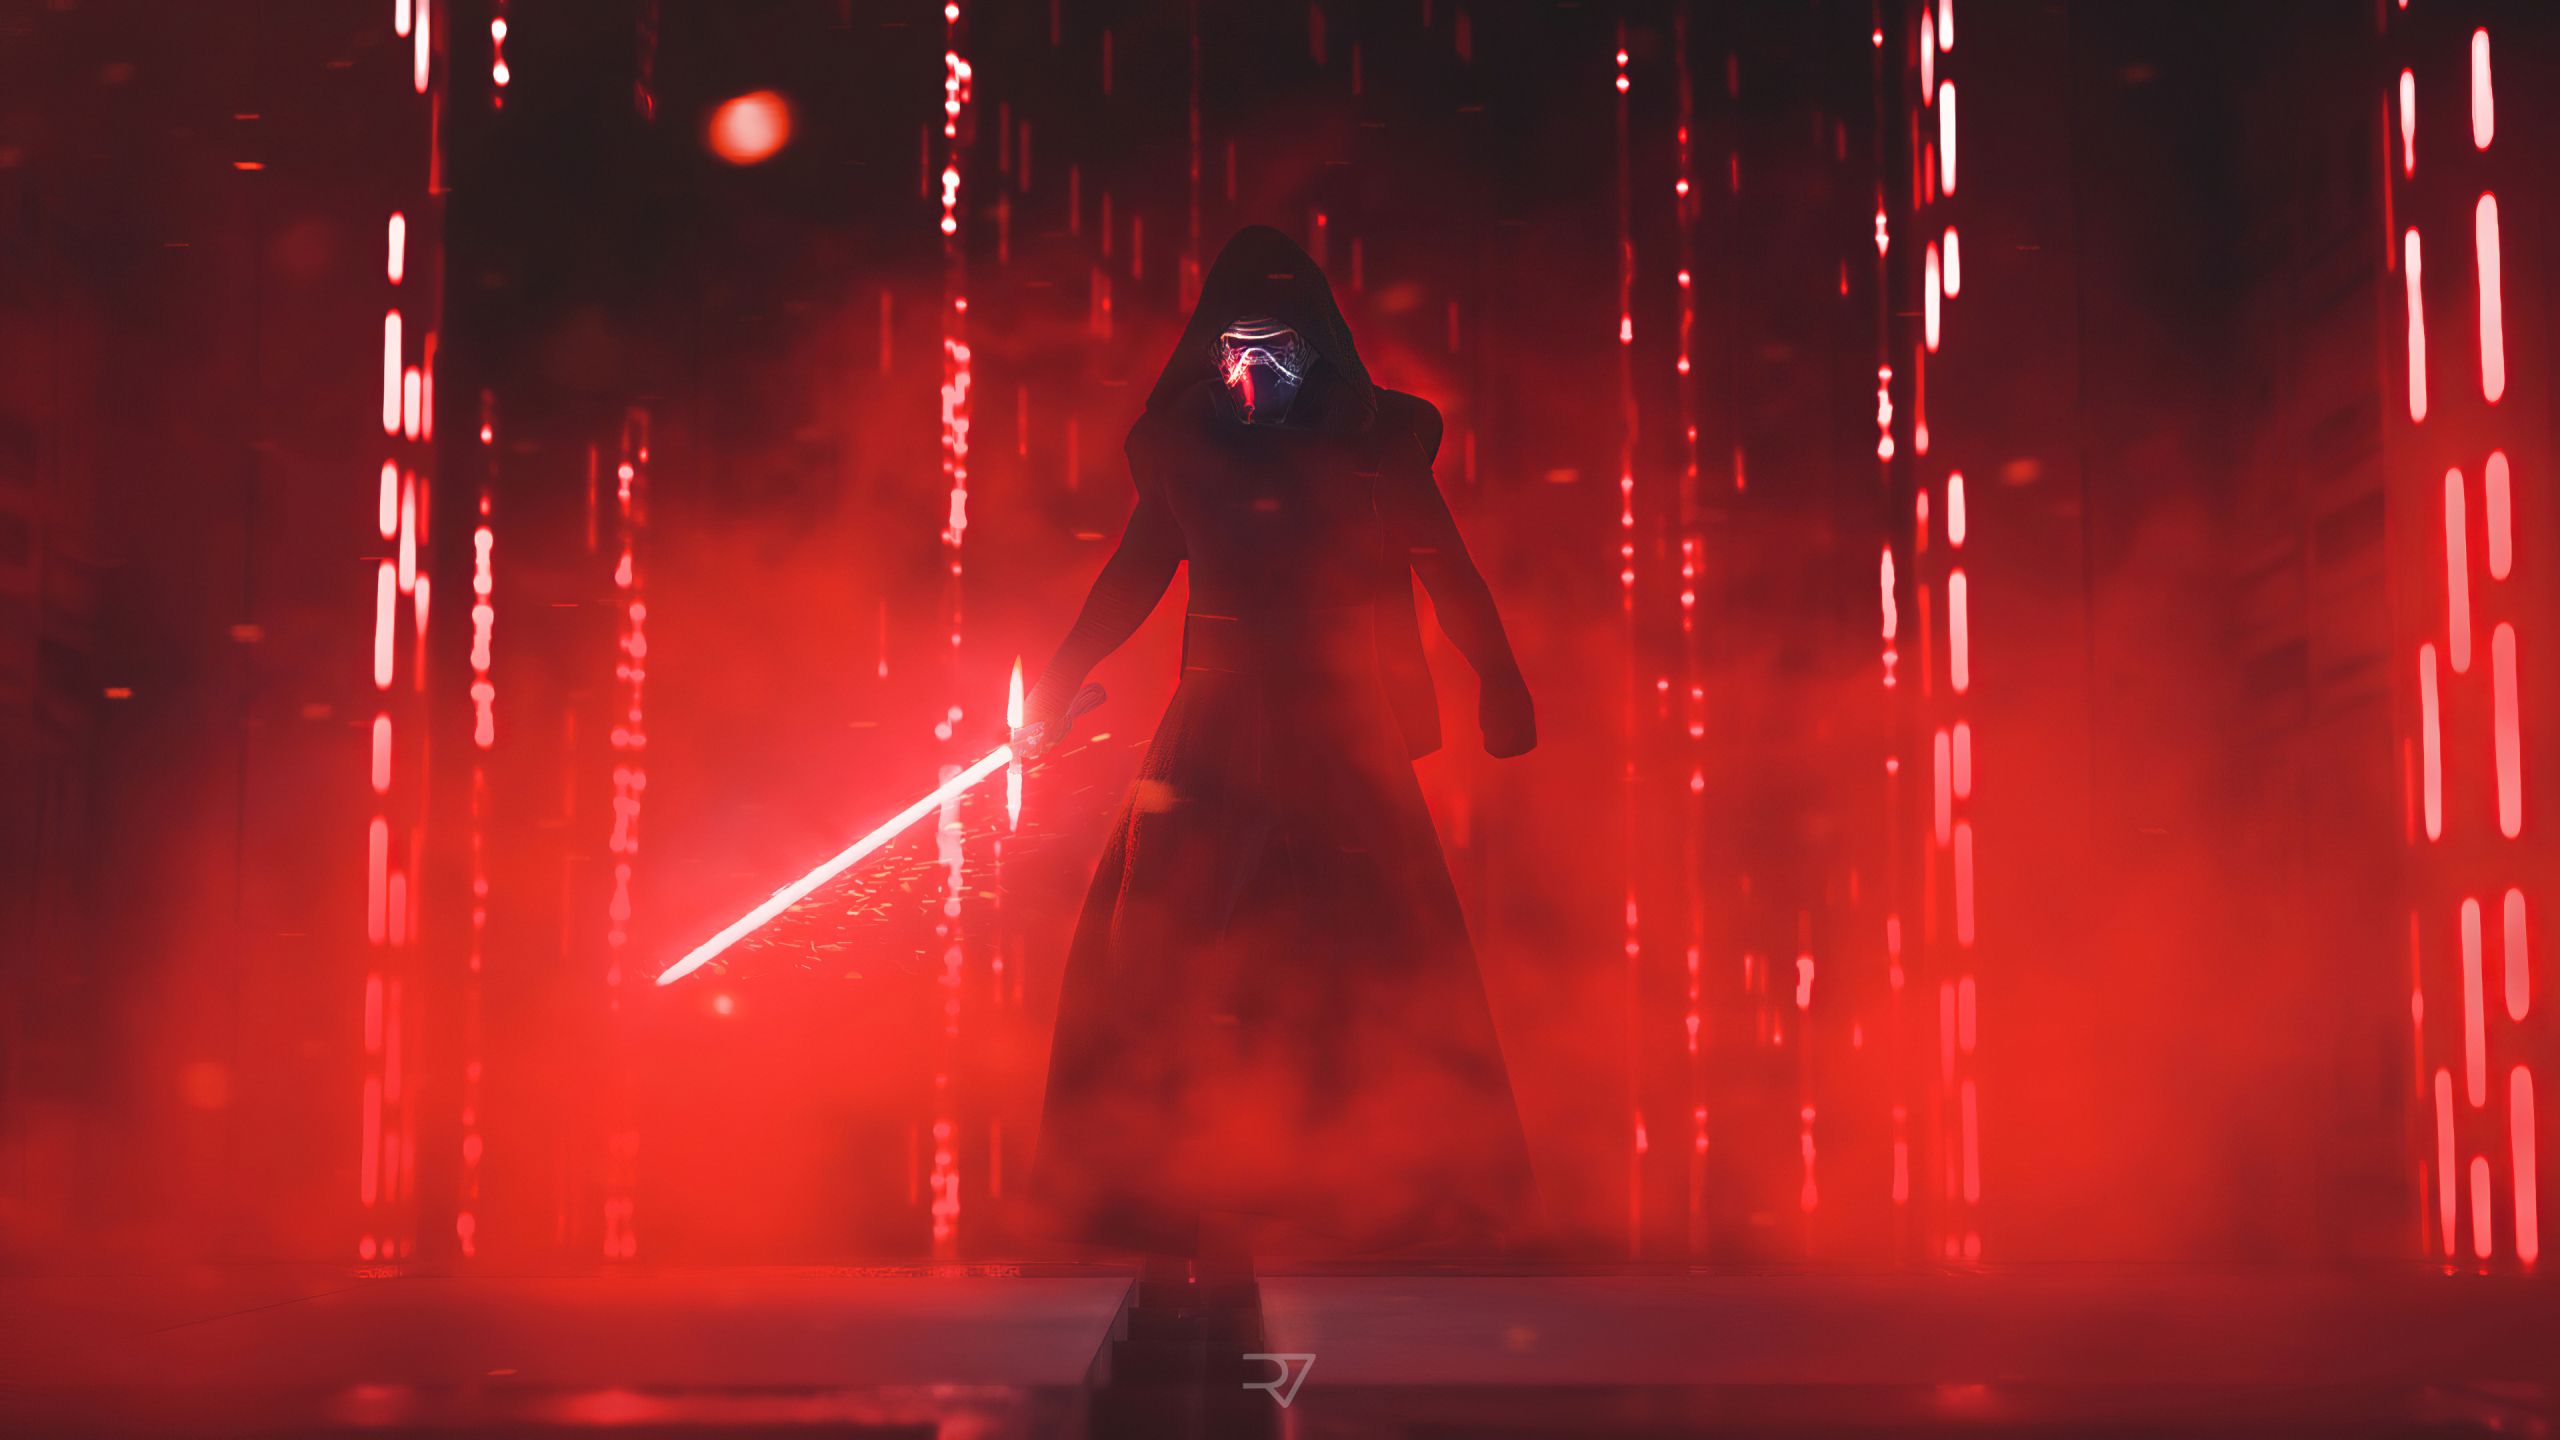 4k Darth Vader 2019 1440P Resolution Wallpaper, HD